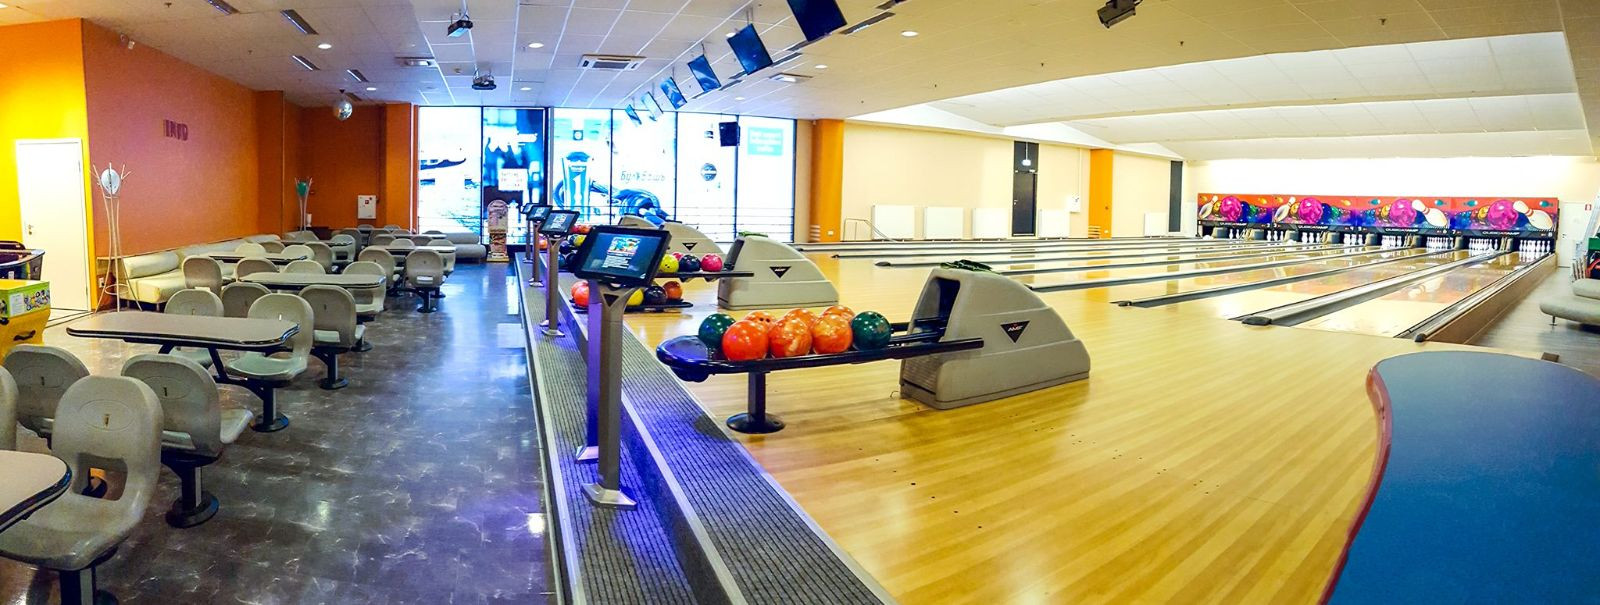 OÜ NS Invest on pereettevõte, mis alustas oma bowlinguklubi majandustegevust veebruaris 2014. aastal ning edukalt tegutseb Narva linnas  Astri Keskuses Bombey B